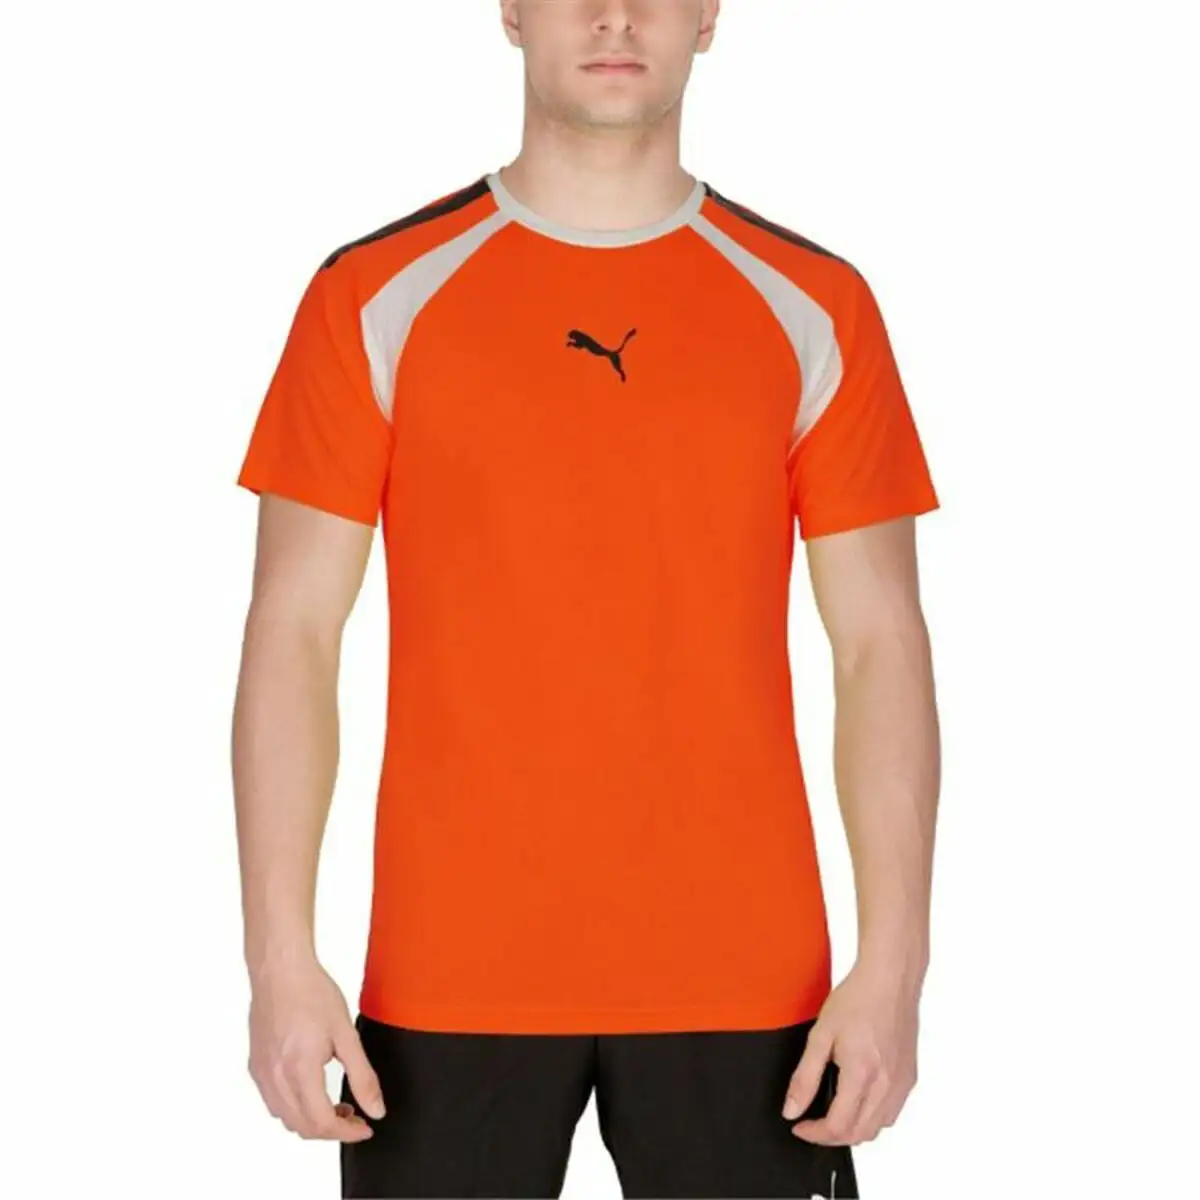 T shirt a manches courtes homme puma teamliga orange homme_7146. Bienvenue chez DIAYTAR SENEGAL - Où Choisir est un Voyage. Plongez dans notre plateforme en ligne pour trouver des produits qui ajoutent de la couleur et de la texture à votre quotidien.